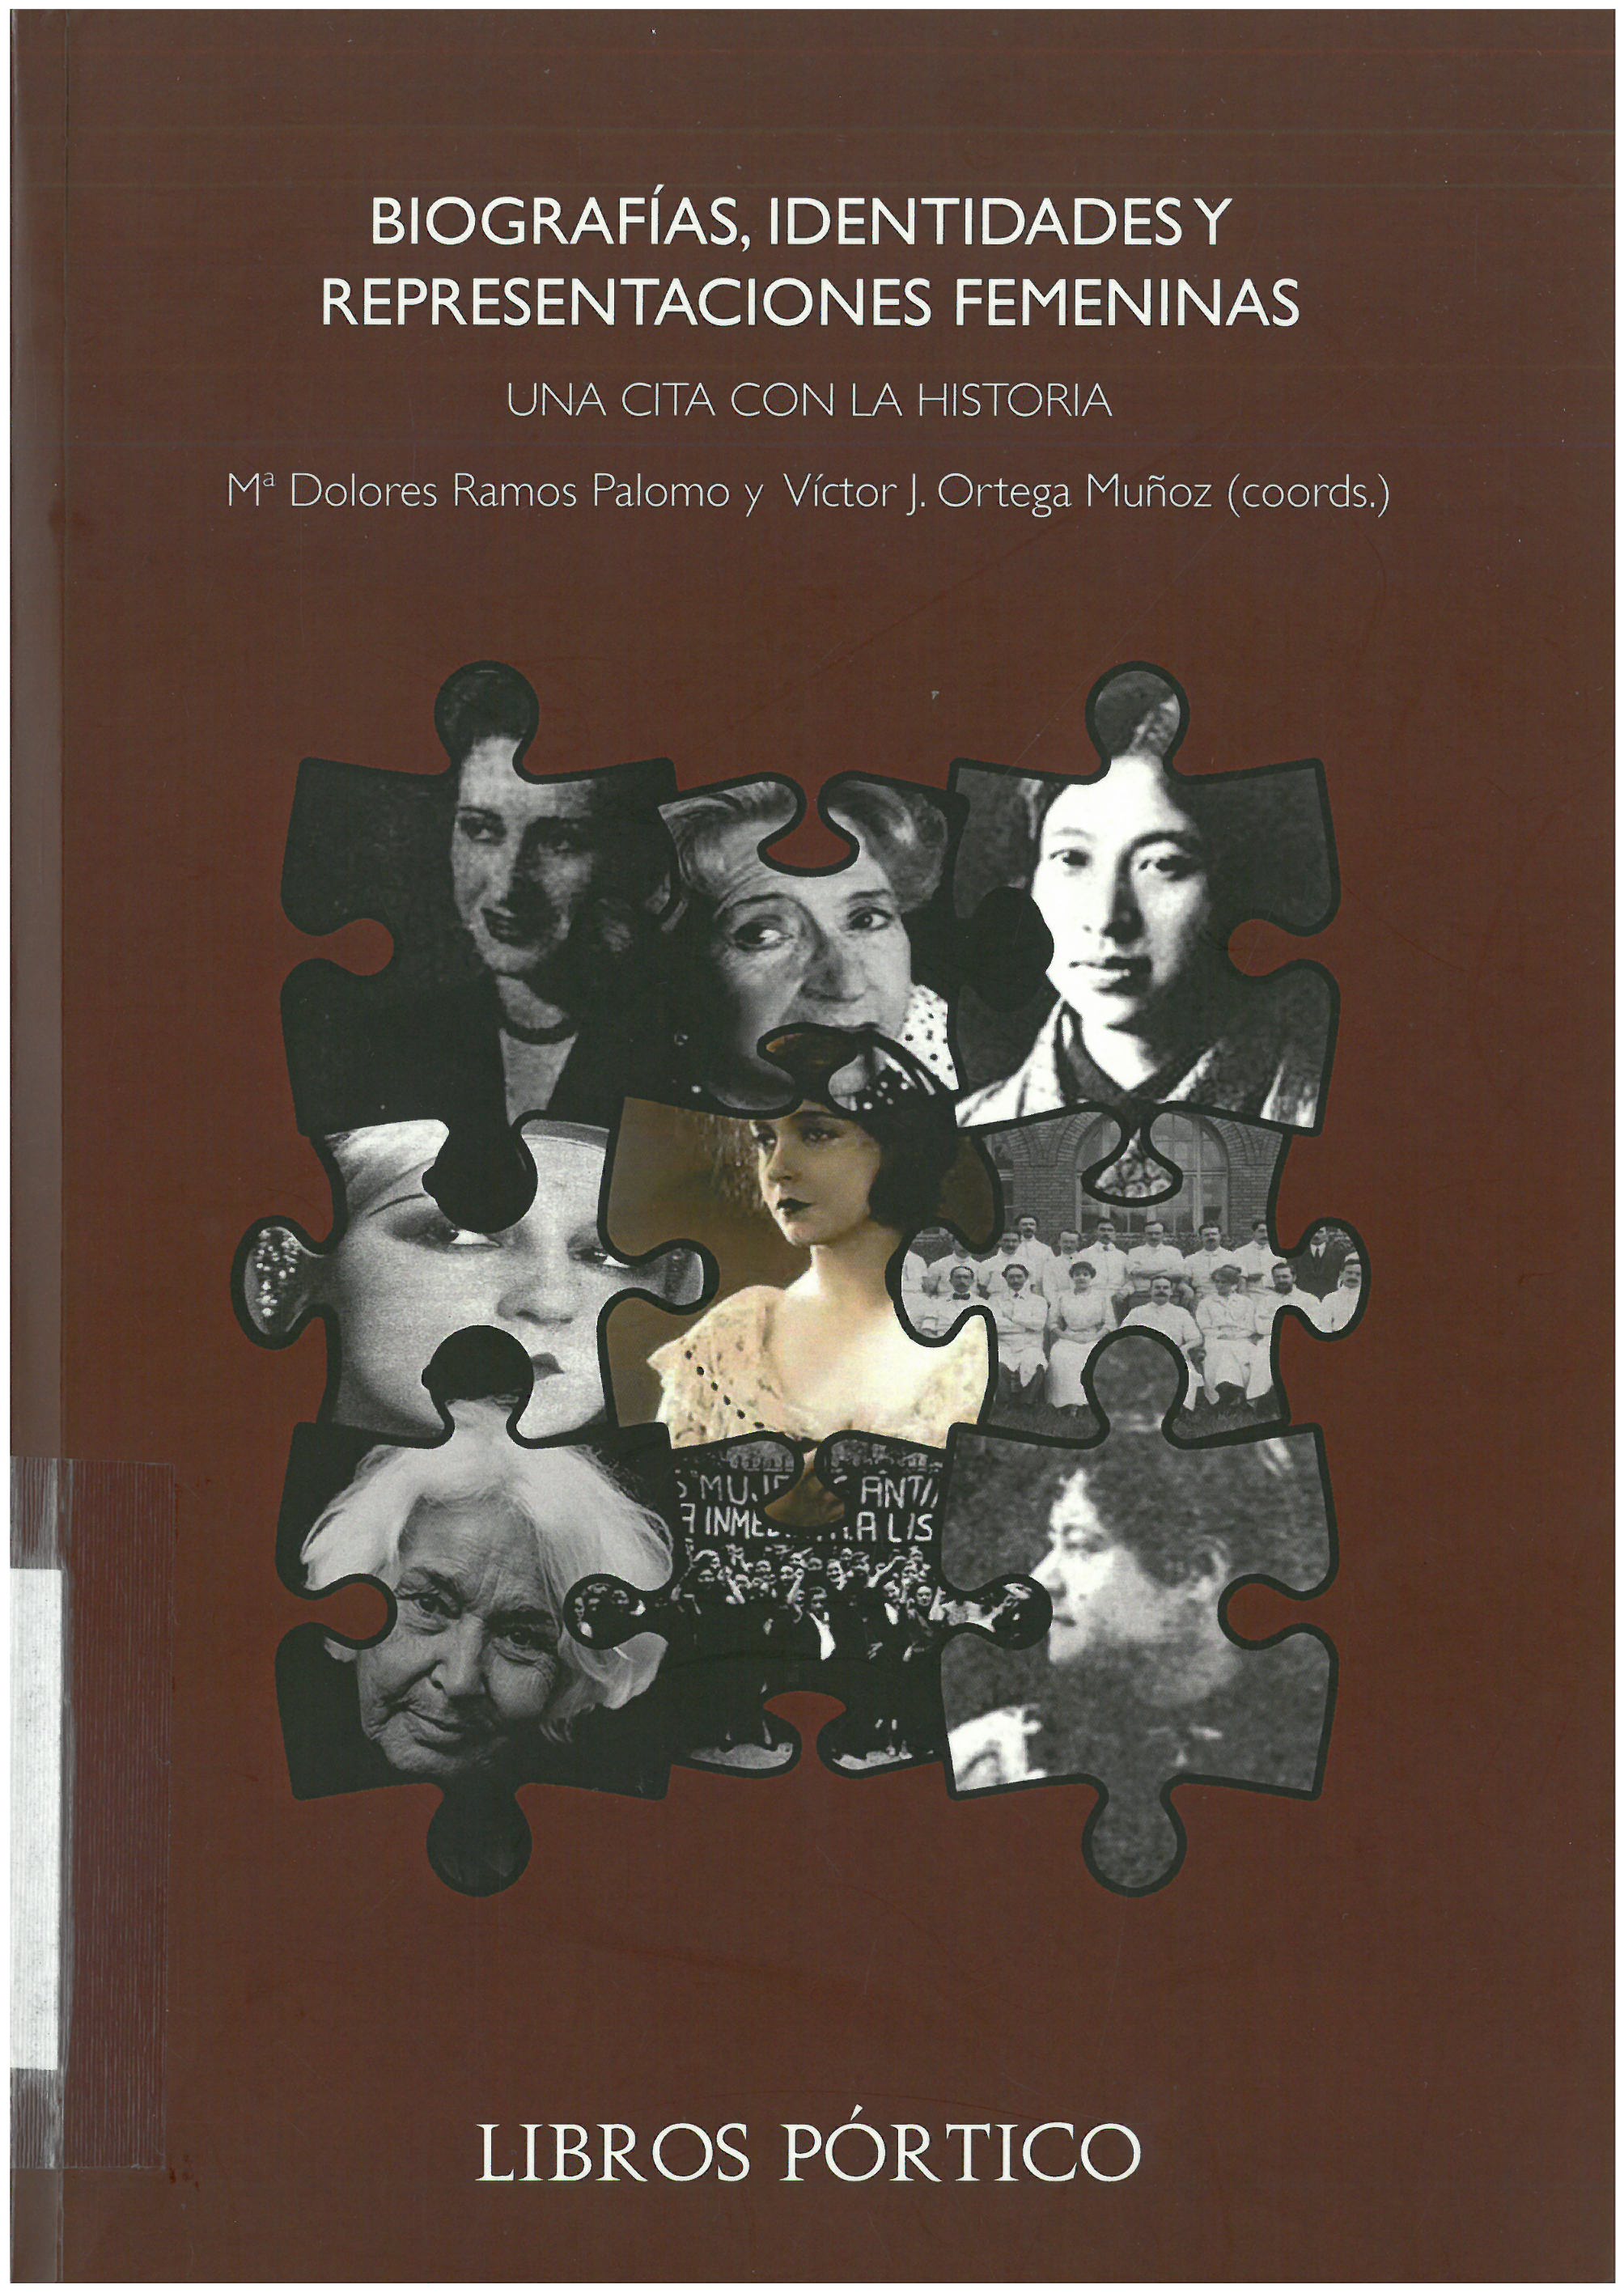 Imagen de portada del libro Biografías, identidades y representaciones femeninas